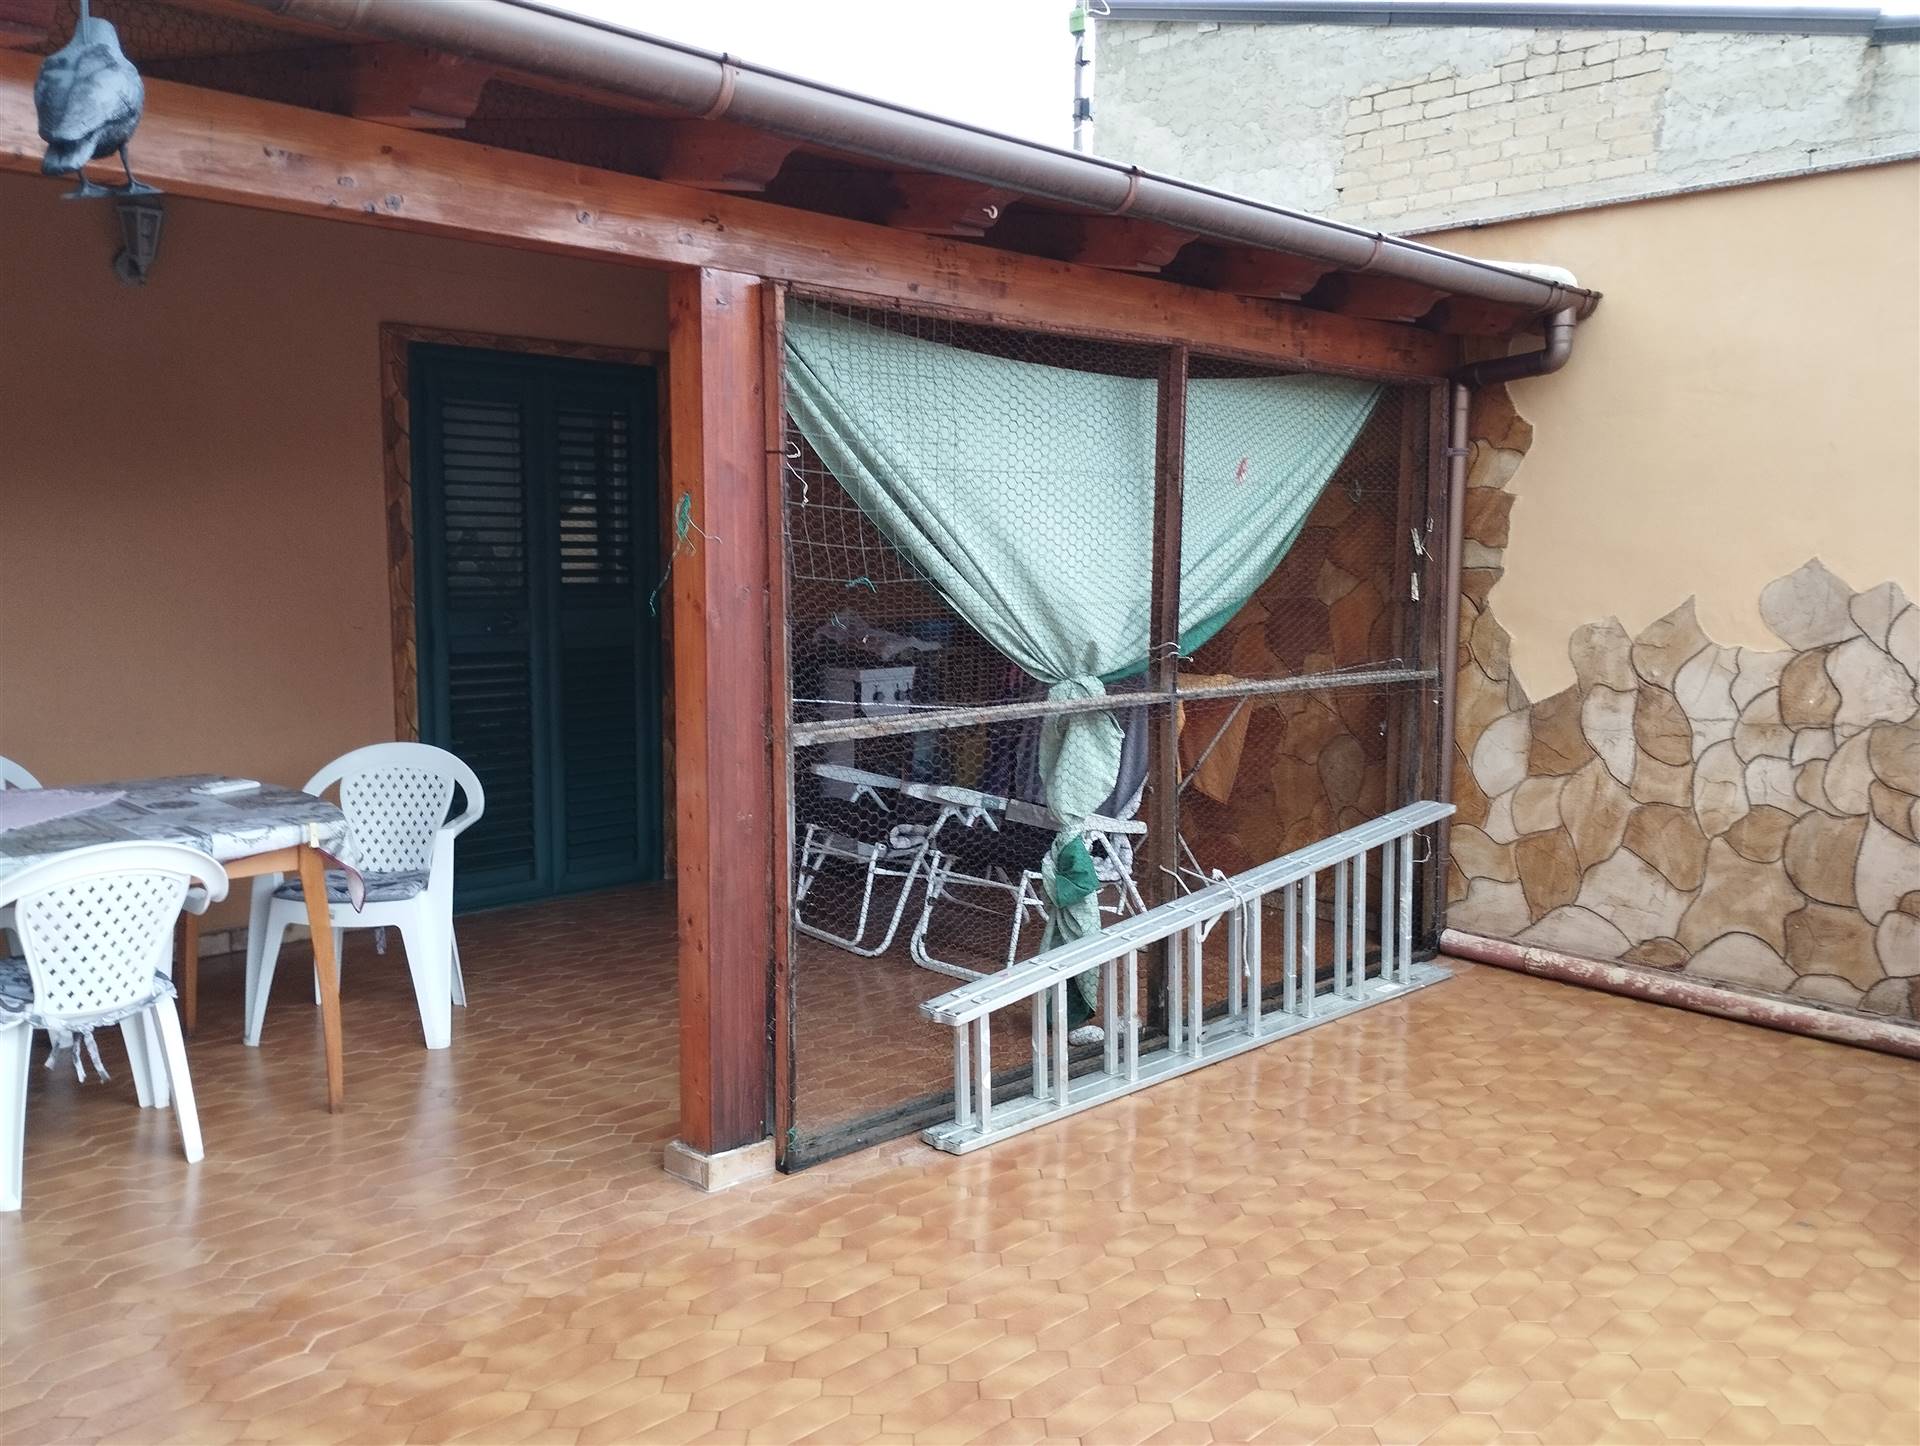 Appartamento in vendita a Licata, 2 locali, zona Località: VIA SALSO, prezzo € 40.000 | PortaleAgenzieImmobiliari.it